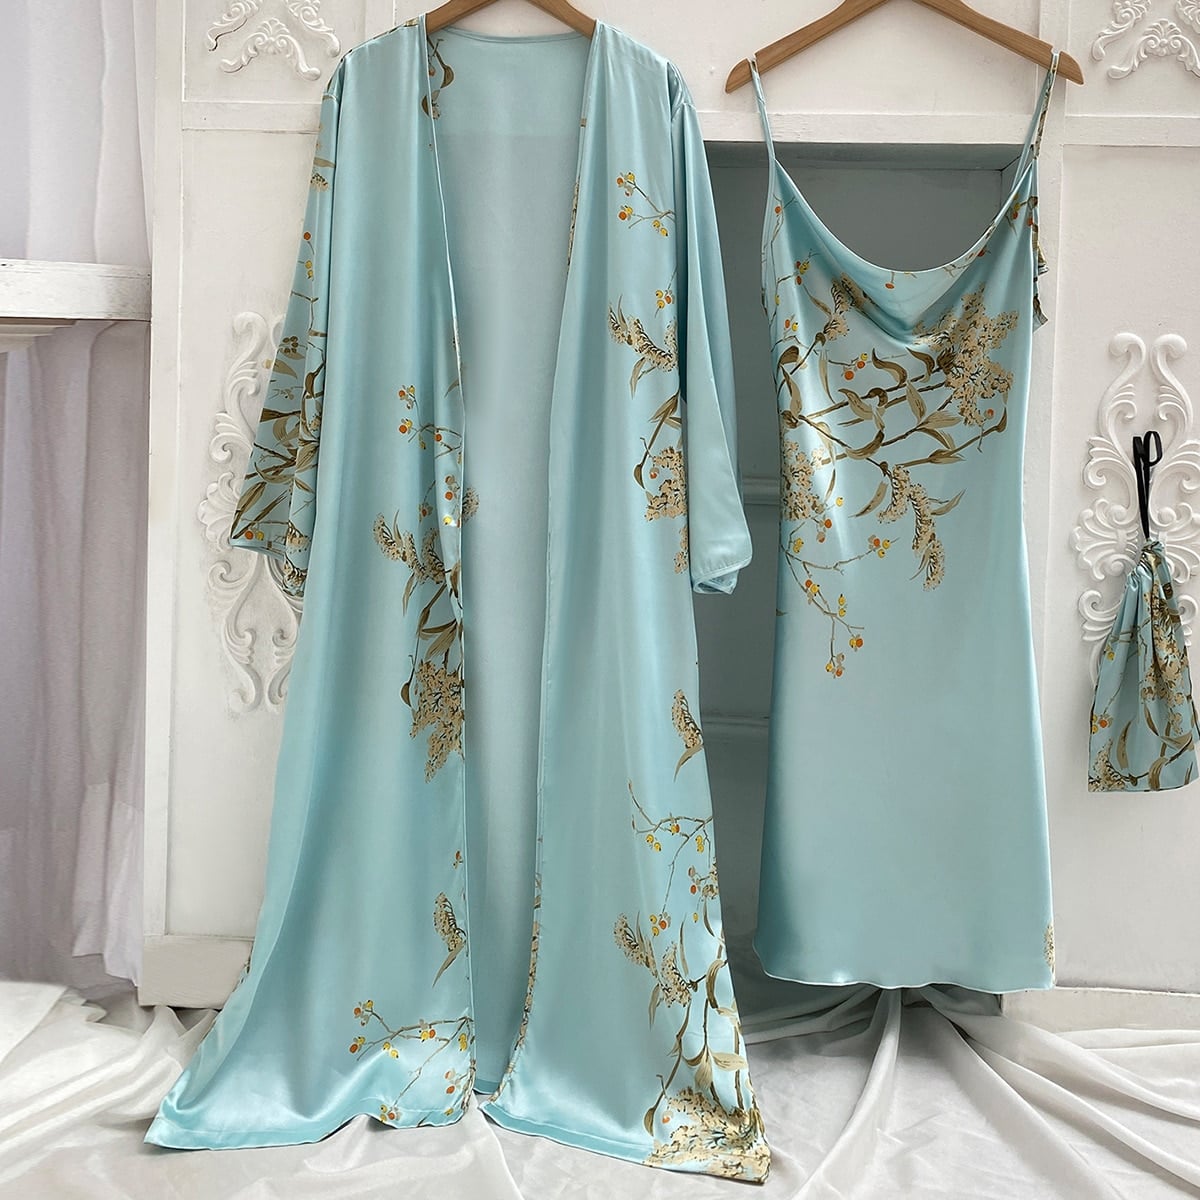 Un kimono et une nuisette en satin bleu clair avec des motifs floraux accrochés sur des cintres côte à côte sur un mur blanc avec des moulures. A côté de la nuisette, il y a un petit sac du même motif accroché à une patère.